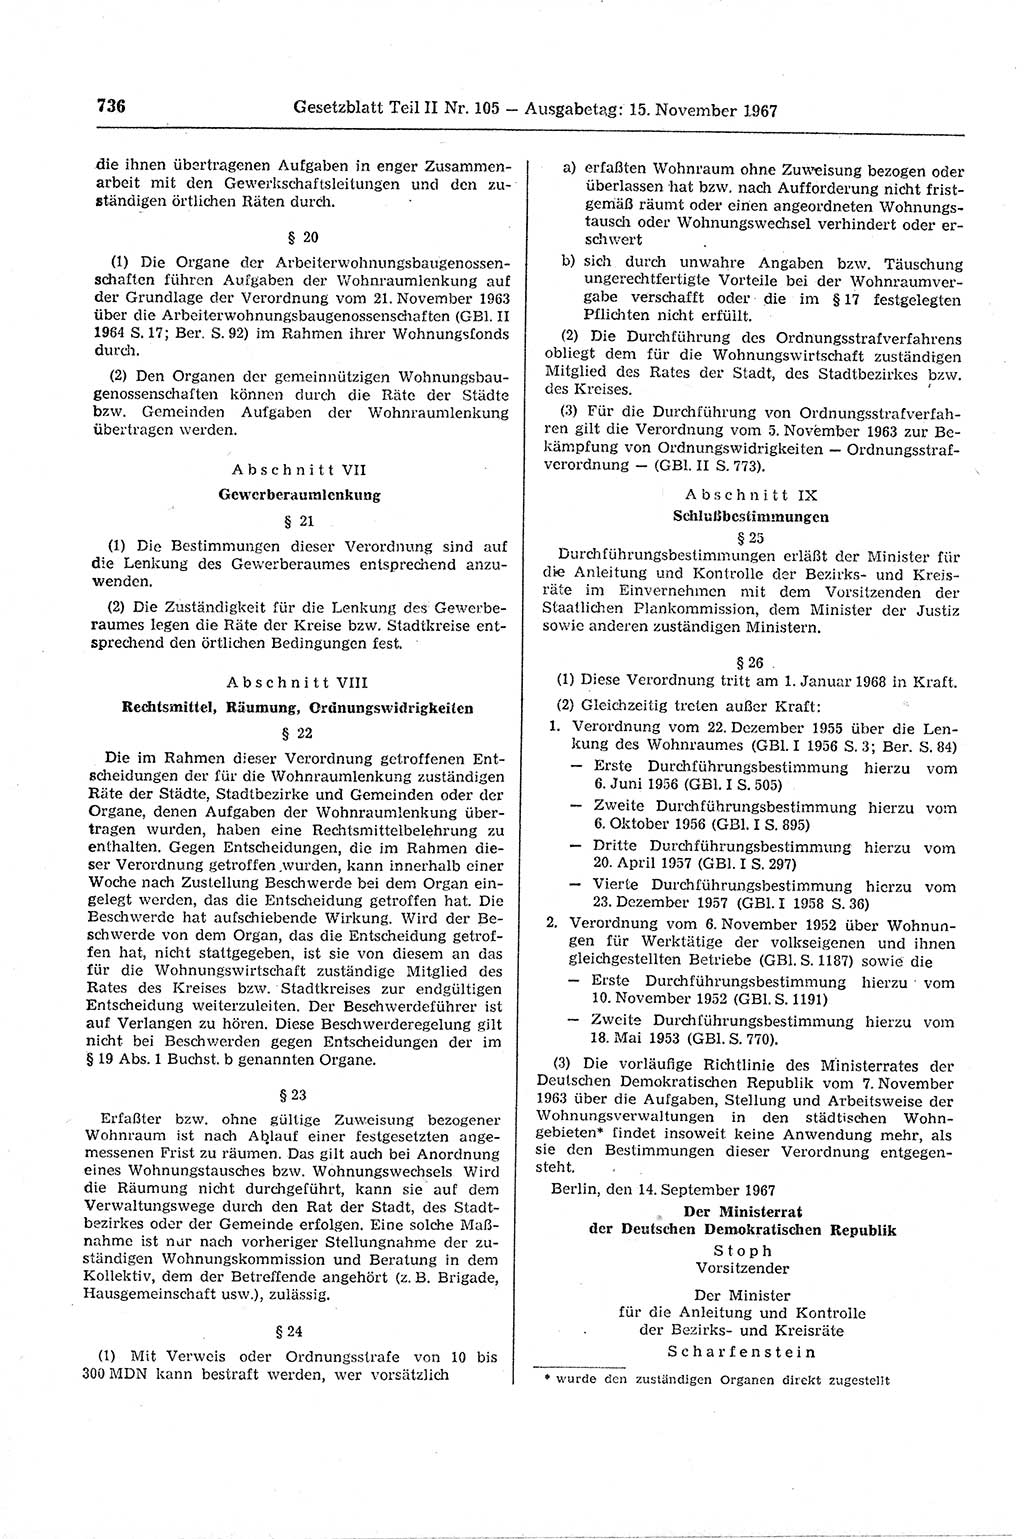 Gesetzblatt (GBl.) der Deutschen Demokratischen Republik (DDR) Teil ⅠⅠ 1967, Seite 736 (GBl. DDR ⅠⅠ 1967, S. 736)